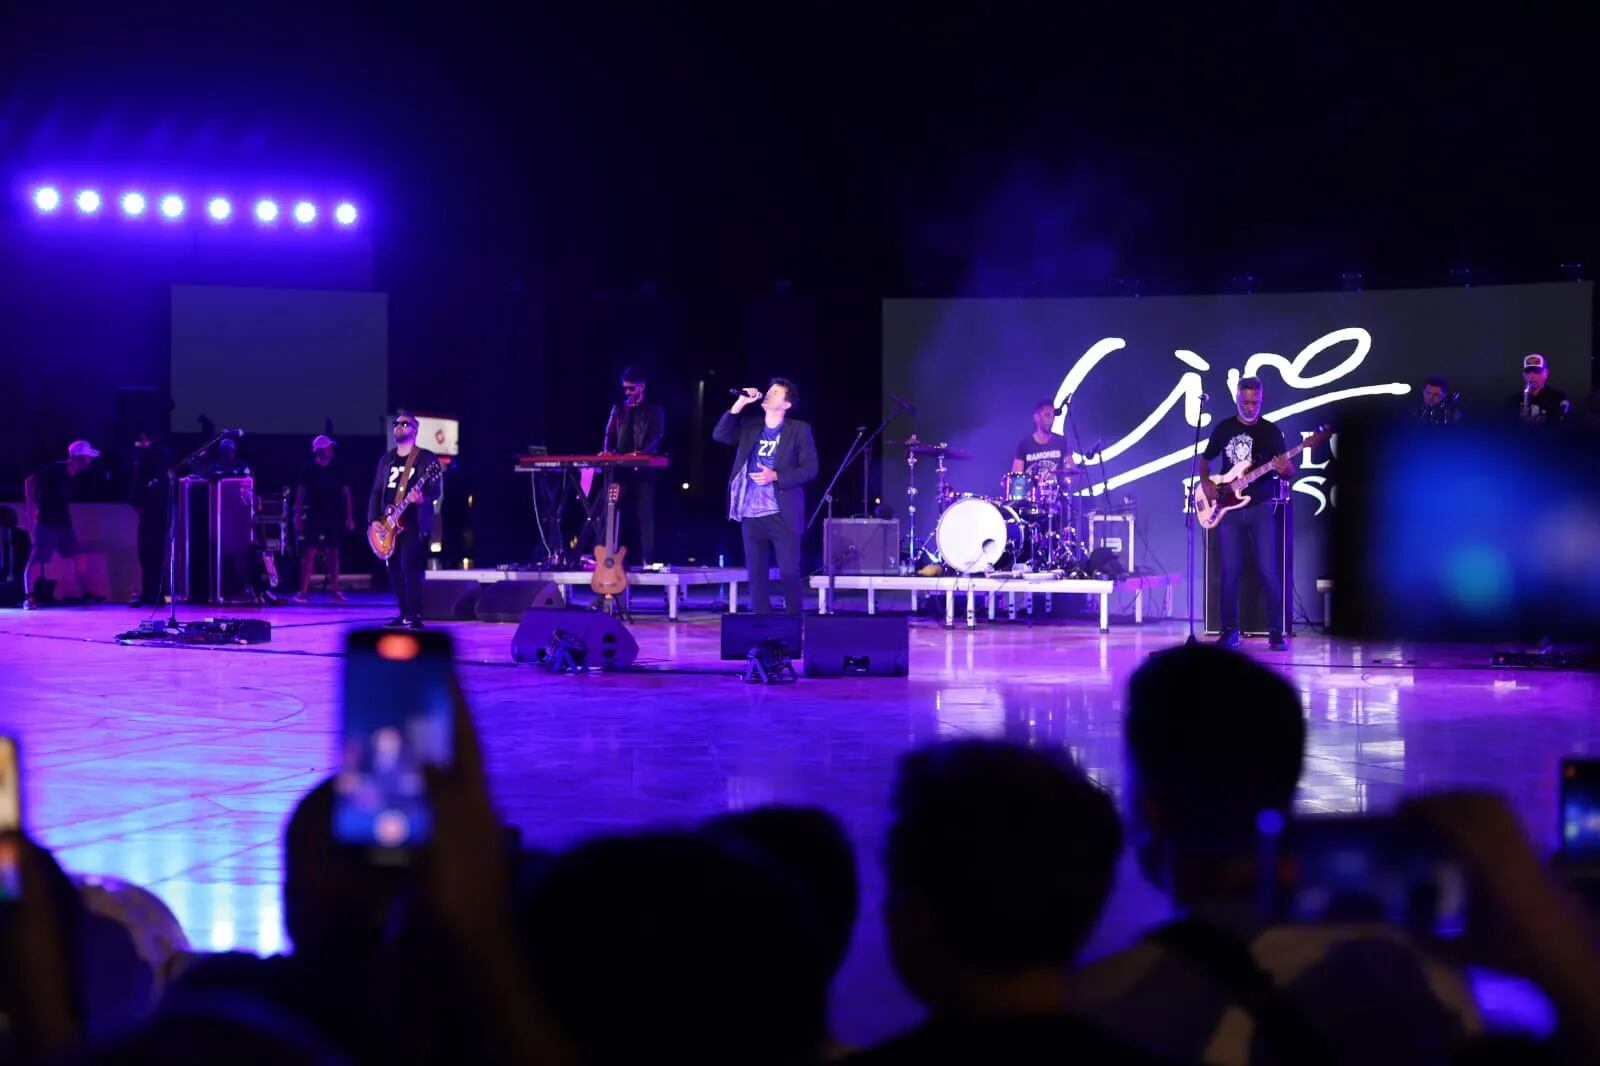 Ciro y un show “bien argento” en Qatar